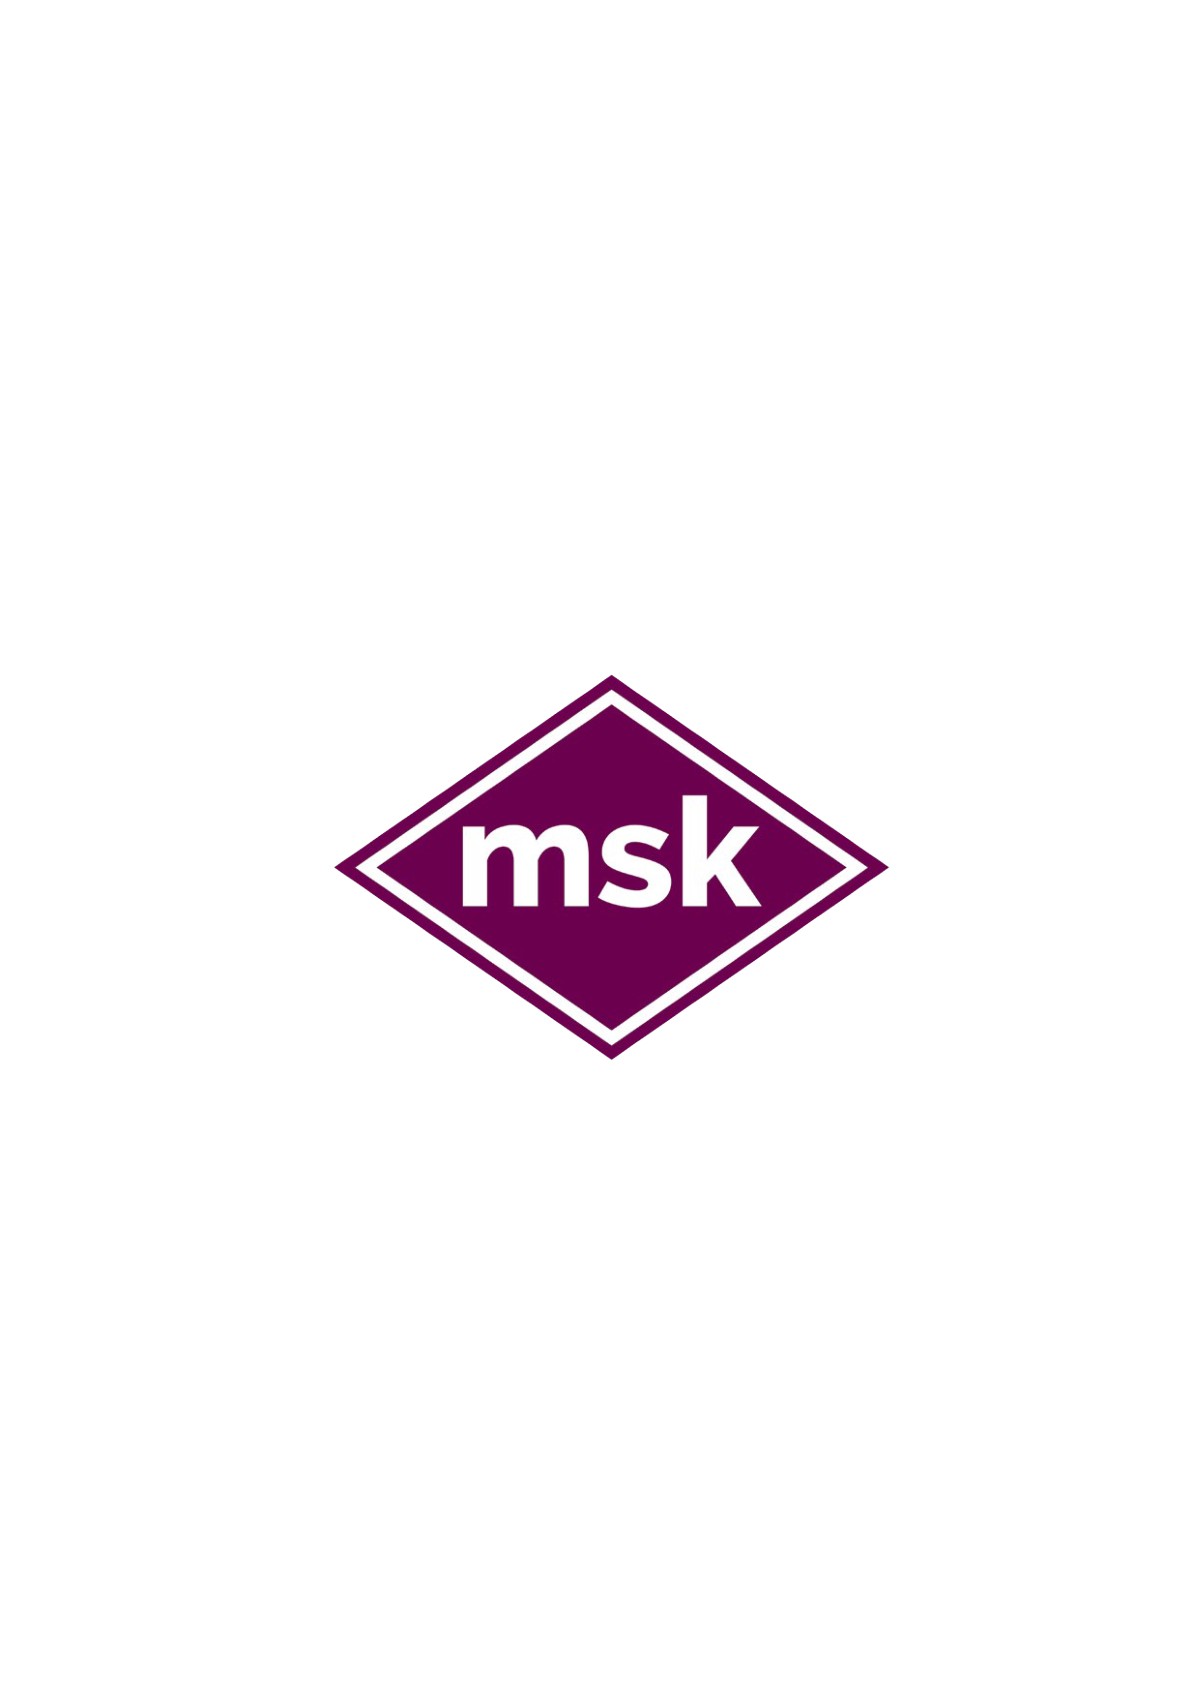 18 Msk Logo Stock Vectors and Vector Art | Shutterstock